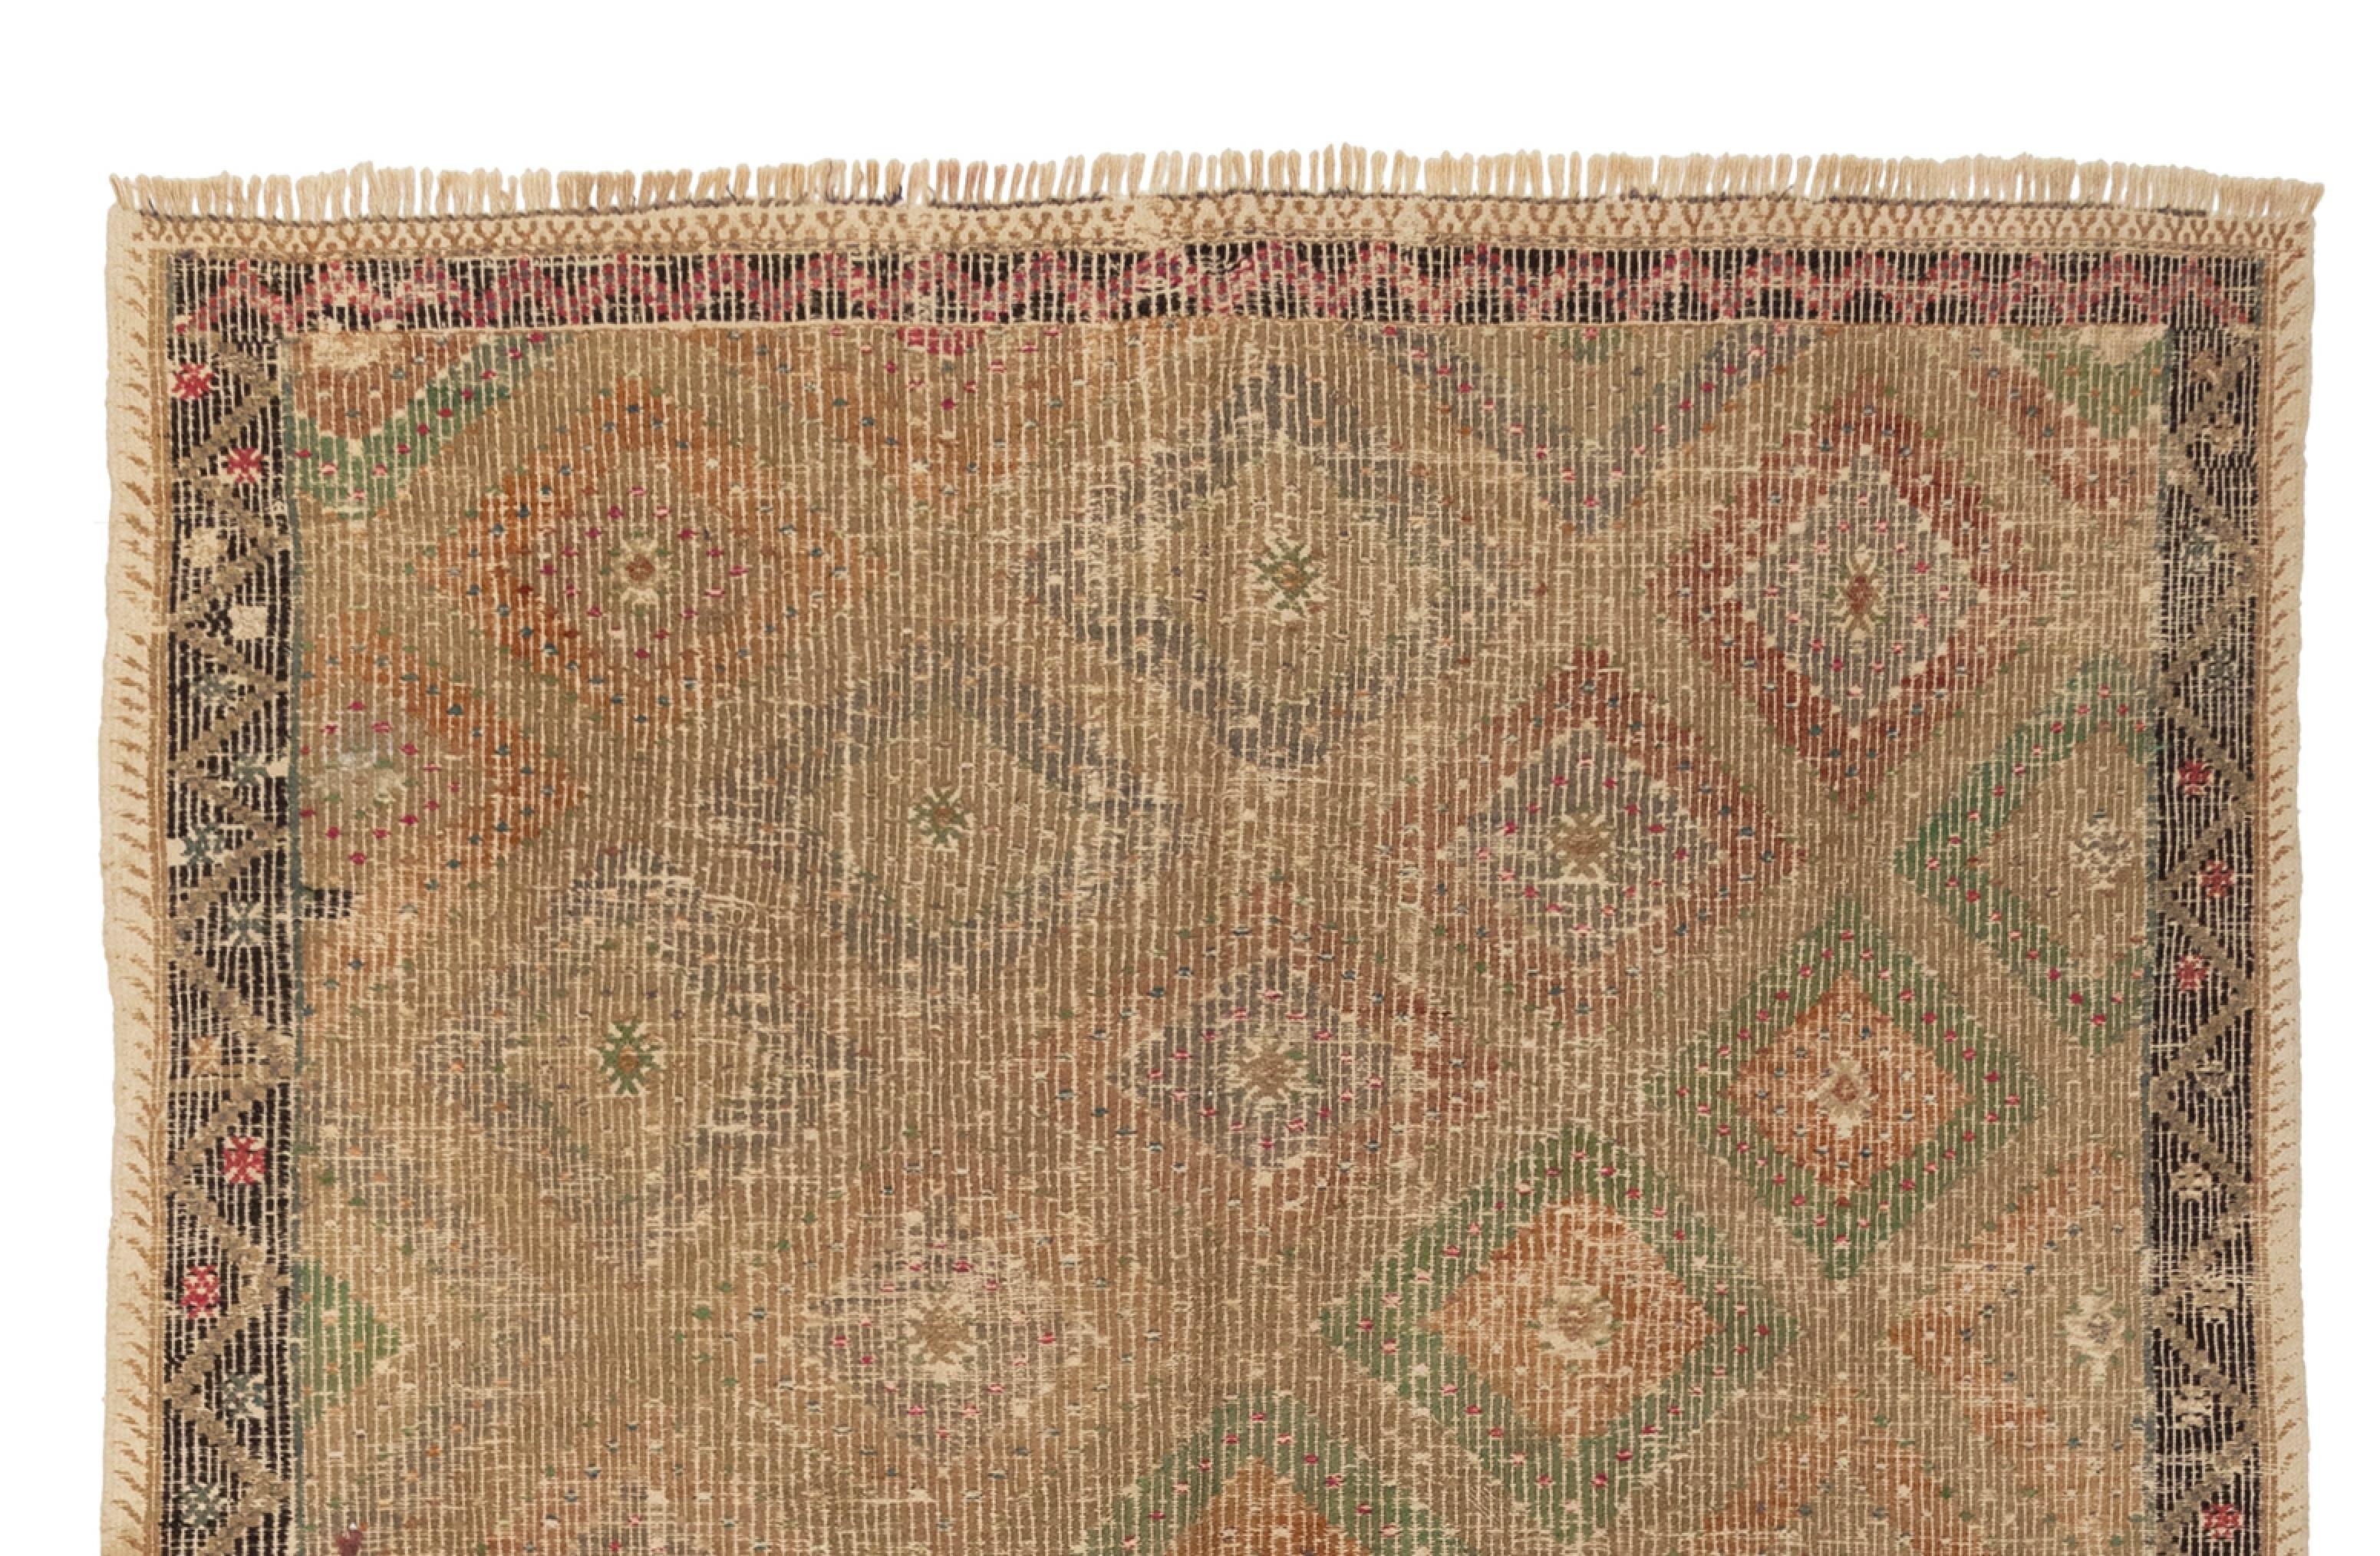 Der türkische Vintage-Kelim mit Schachbrettmuster ist ein wunderschönes Stück Textilkunst, das Charme und Charakter ausstrahlt. Dieser besondere Kelim besticht durch seine schönen Farben und das zeitlose Schachbrettmuster, das seine Oberfläche